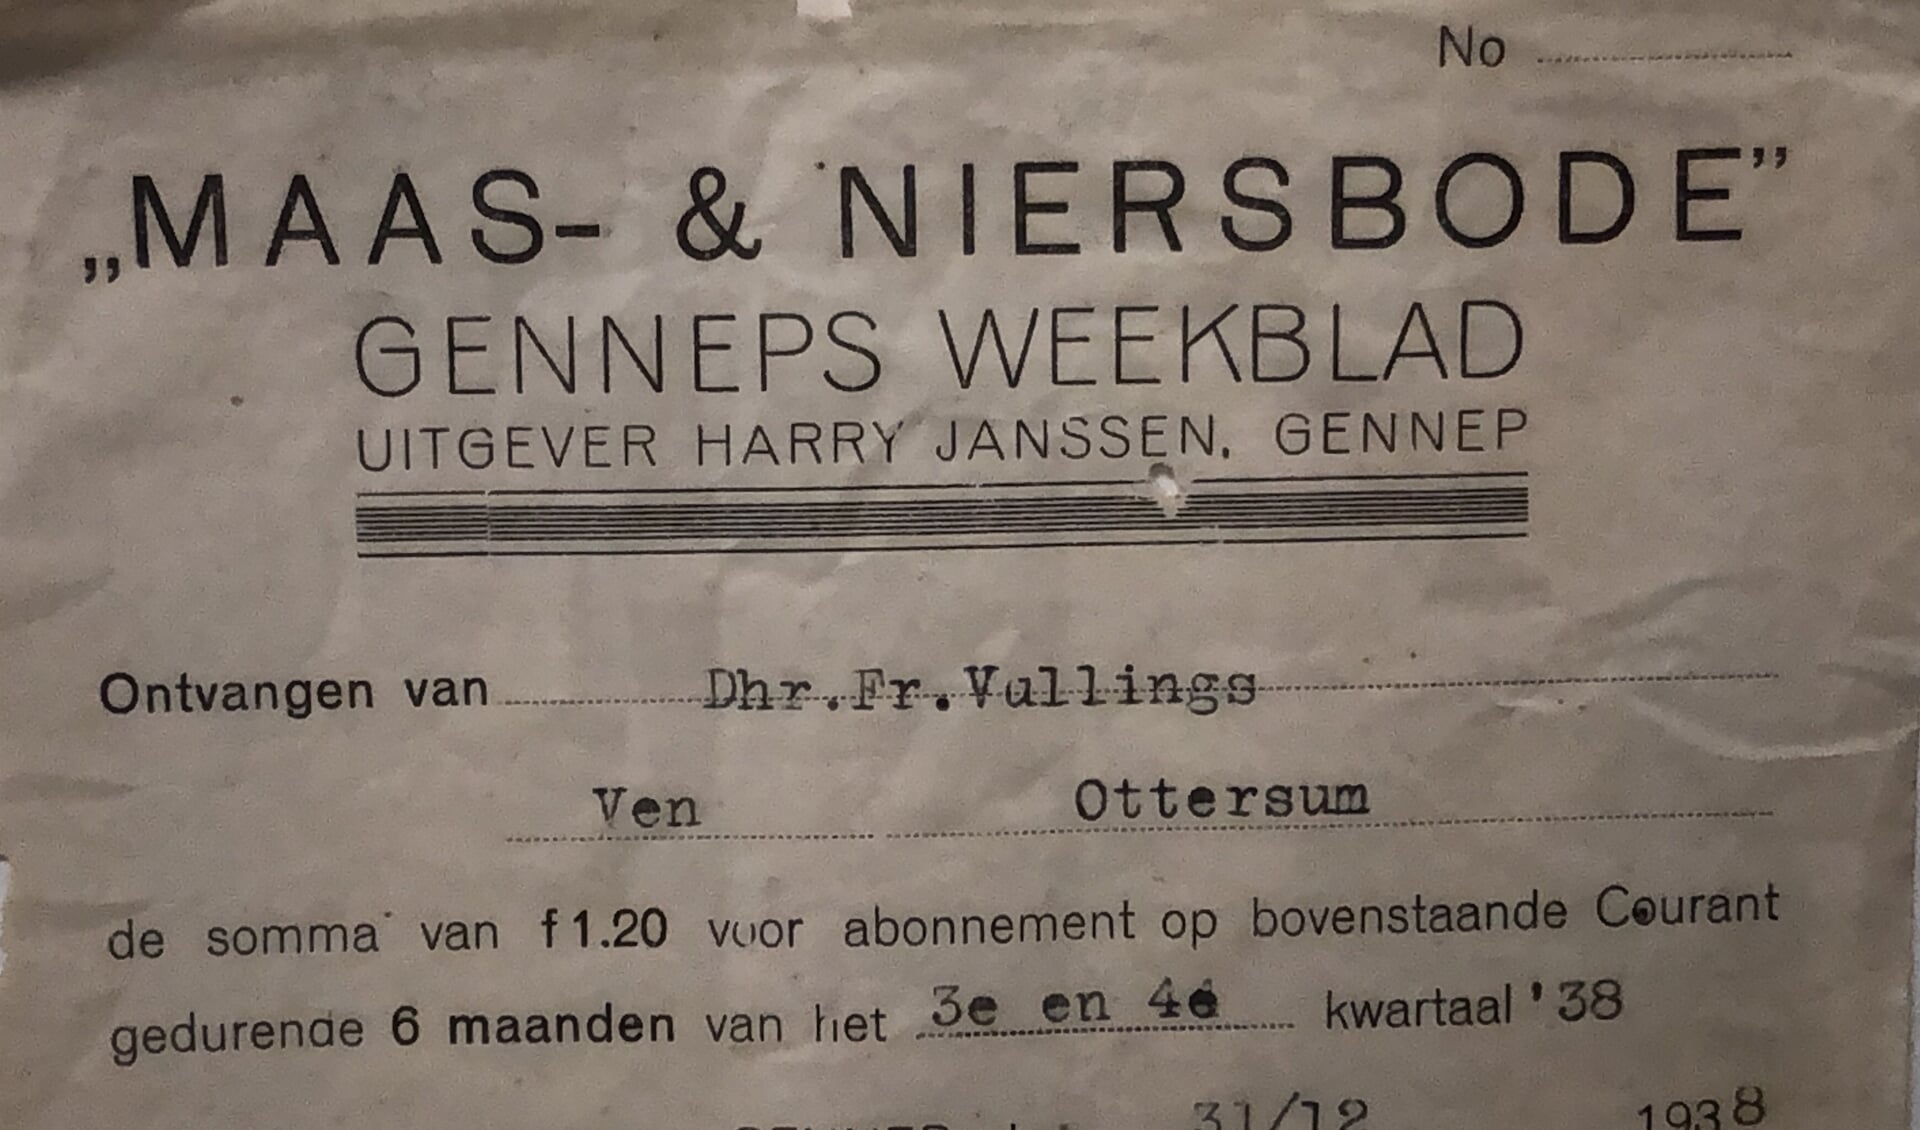 De Maas en Niersbode keert terug. Dè weekkrant voor Gennep en omgeving verscheen in 2015 voor het laatst onder eigen naam. 